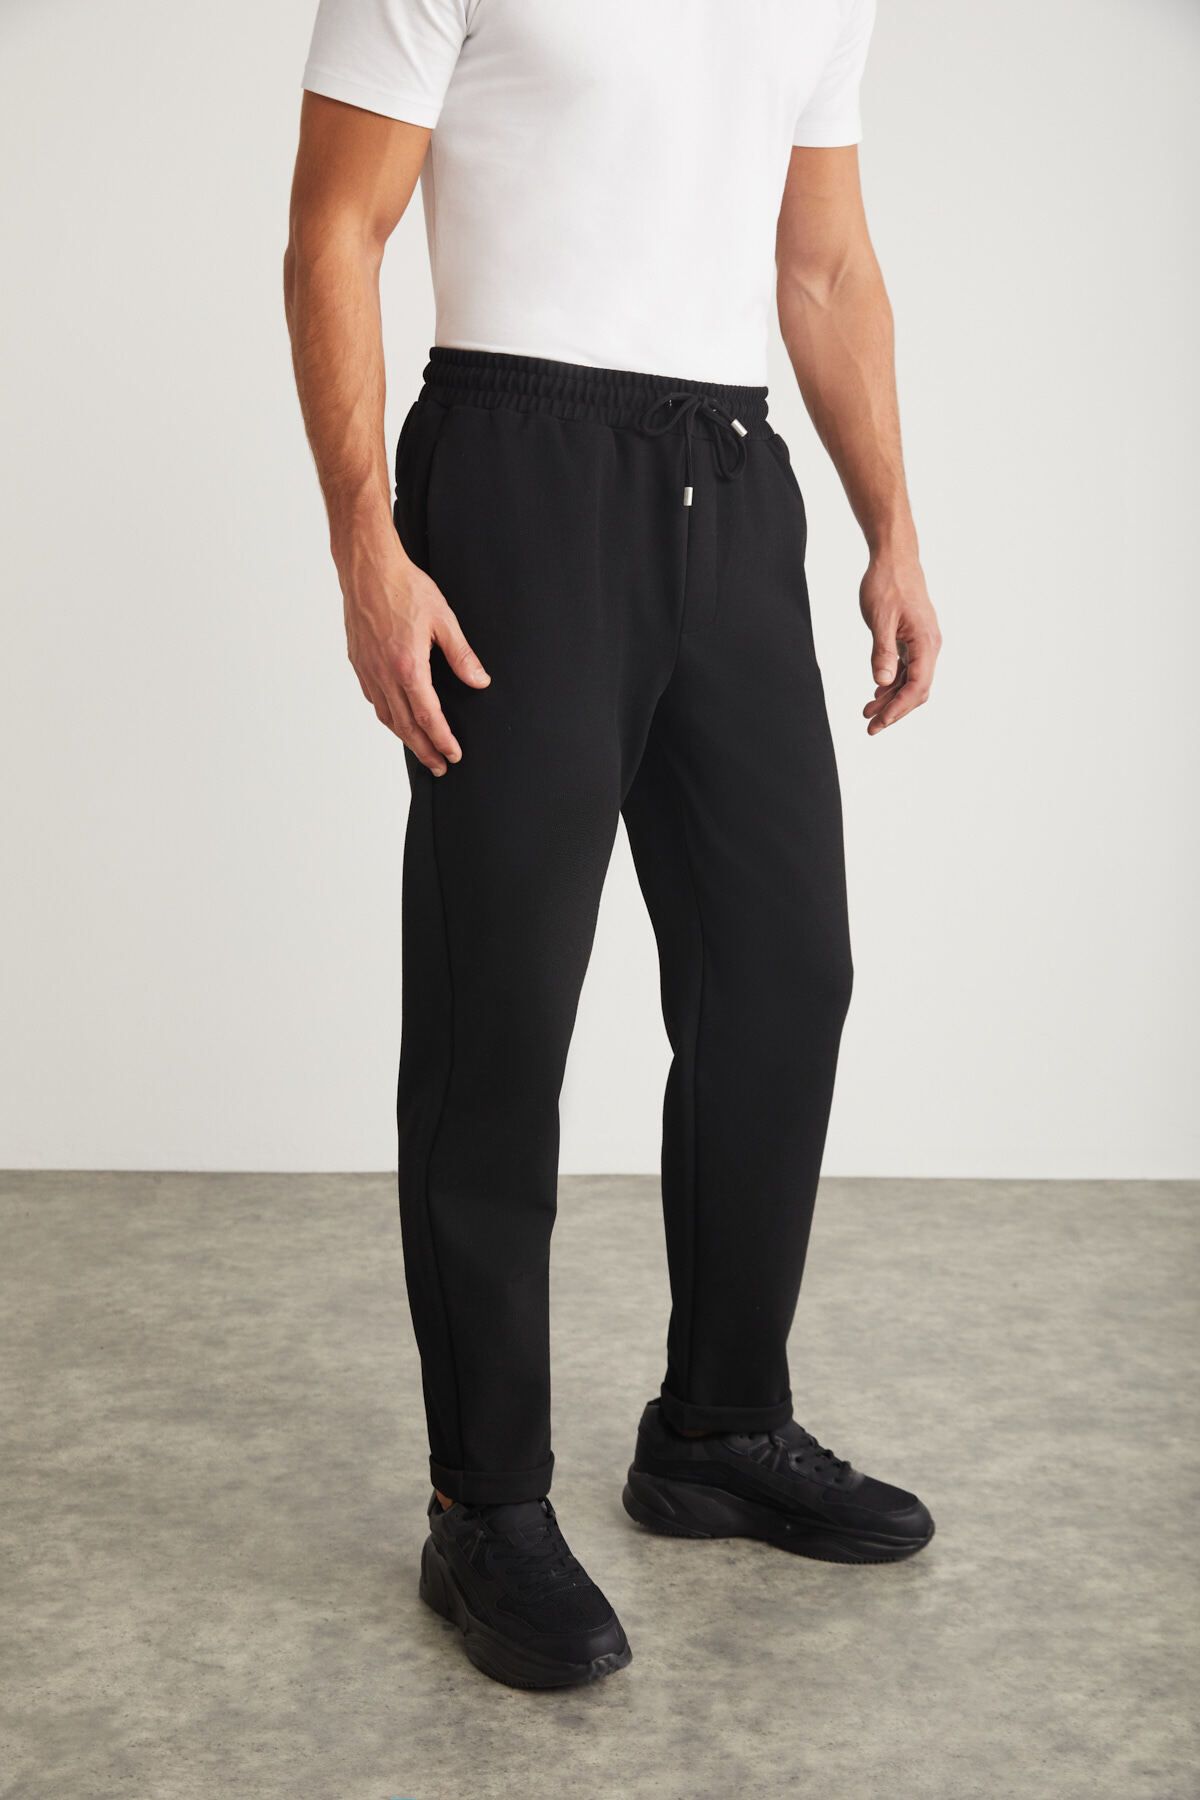 GRIMELANGE Walsh Erkek Pike Görünümlü Özel Kumaşlı Esnek Duble Paça Kordonlu Beli Lastikli Siyah Pantolon